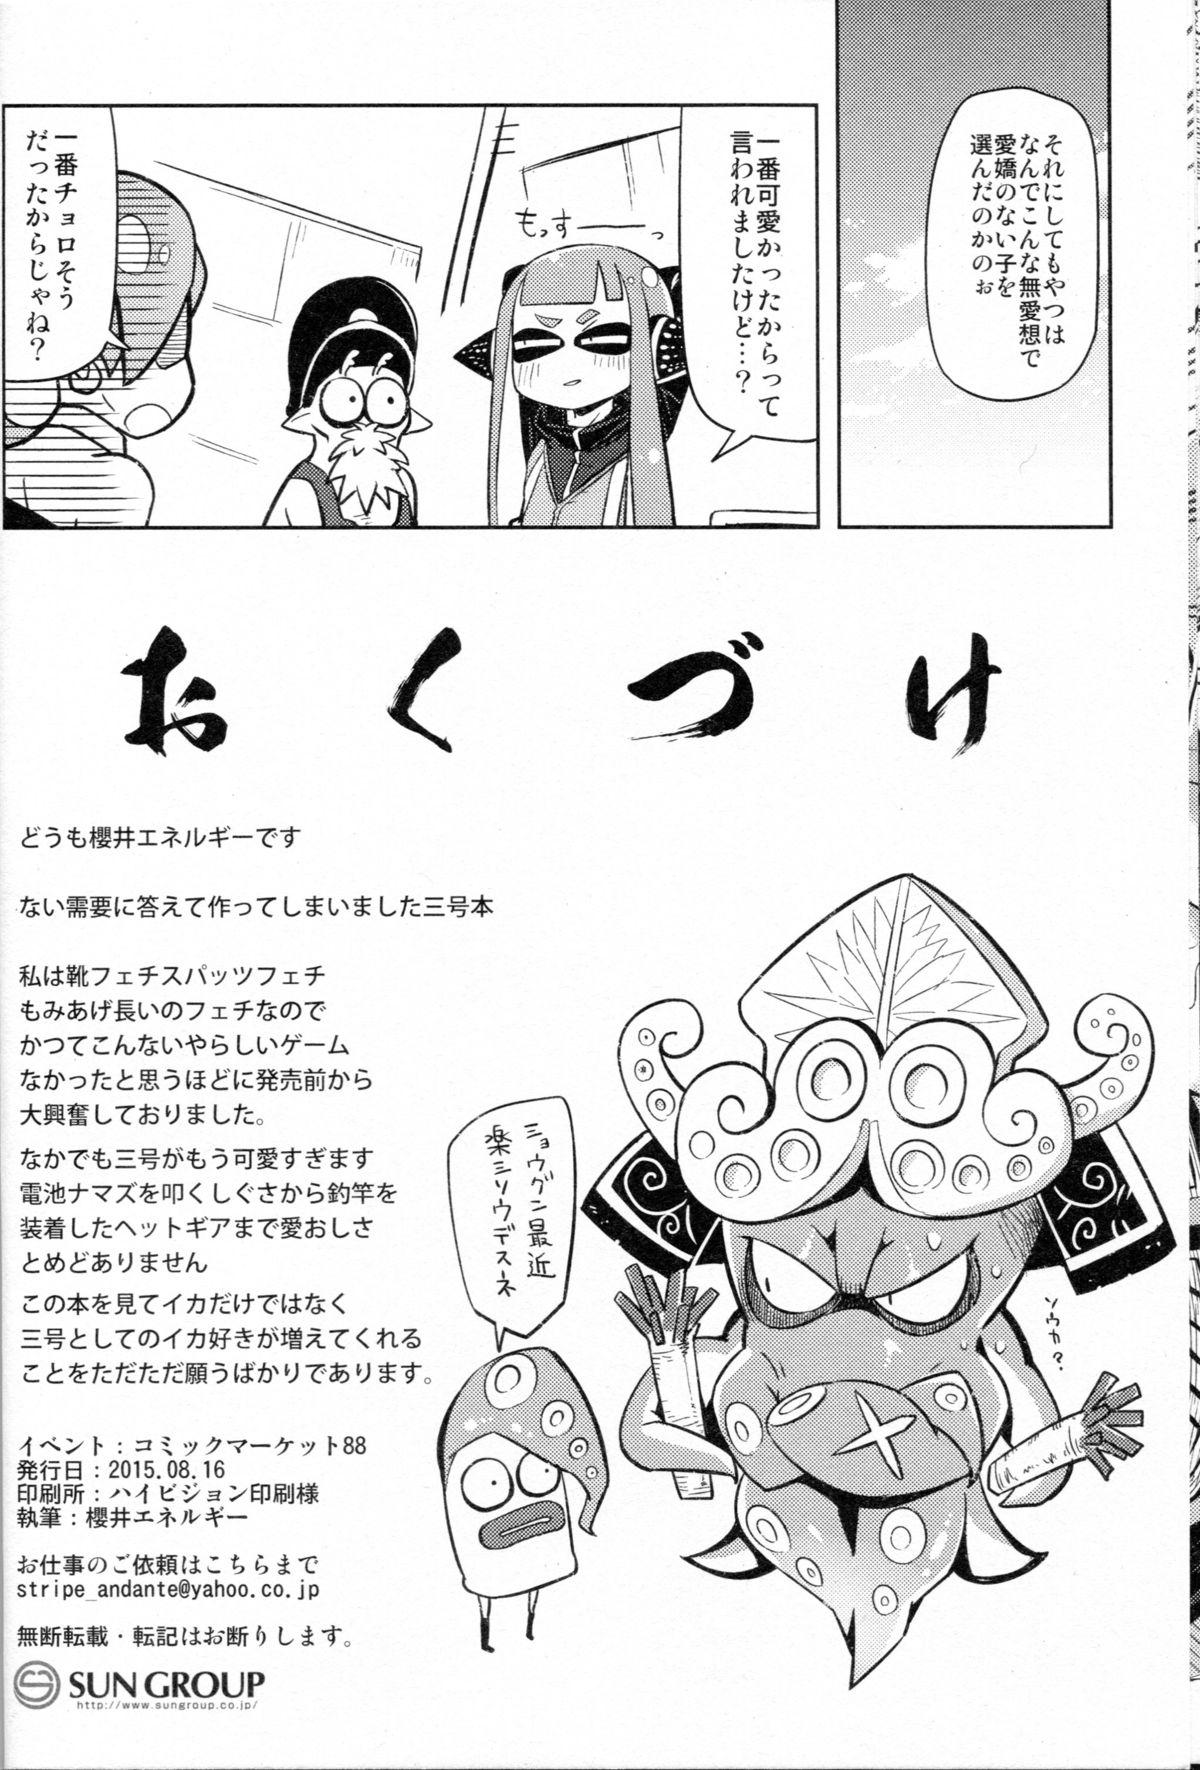 Bunduda Hero Kikiippatsu - Splatoon Jockstrap - Page 22